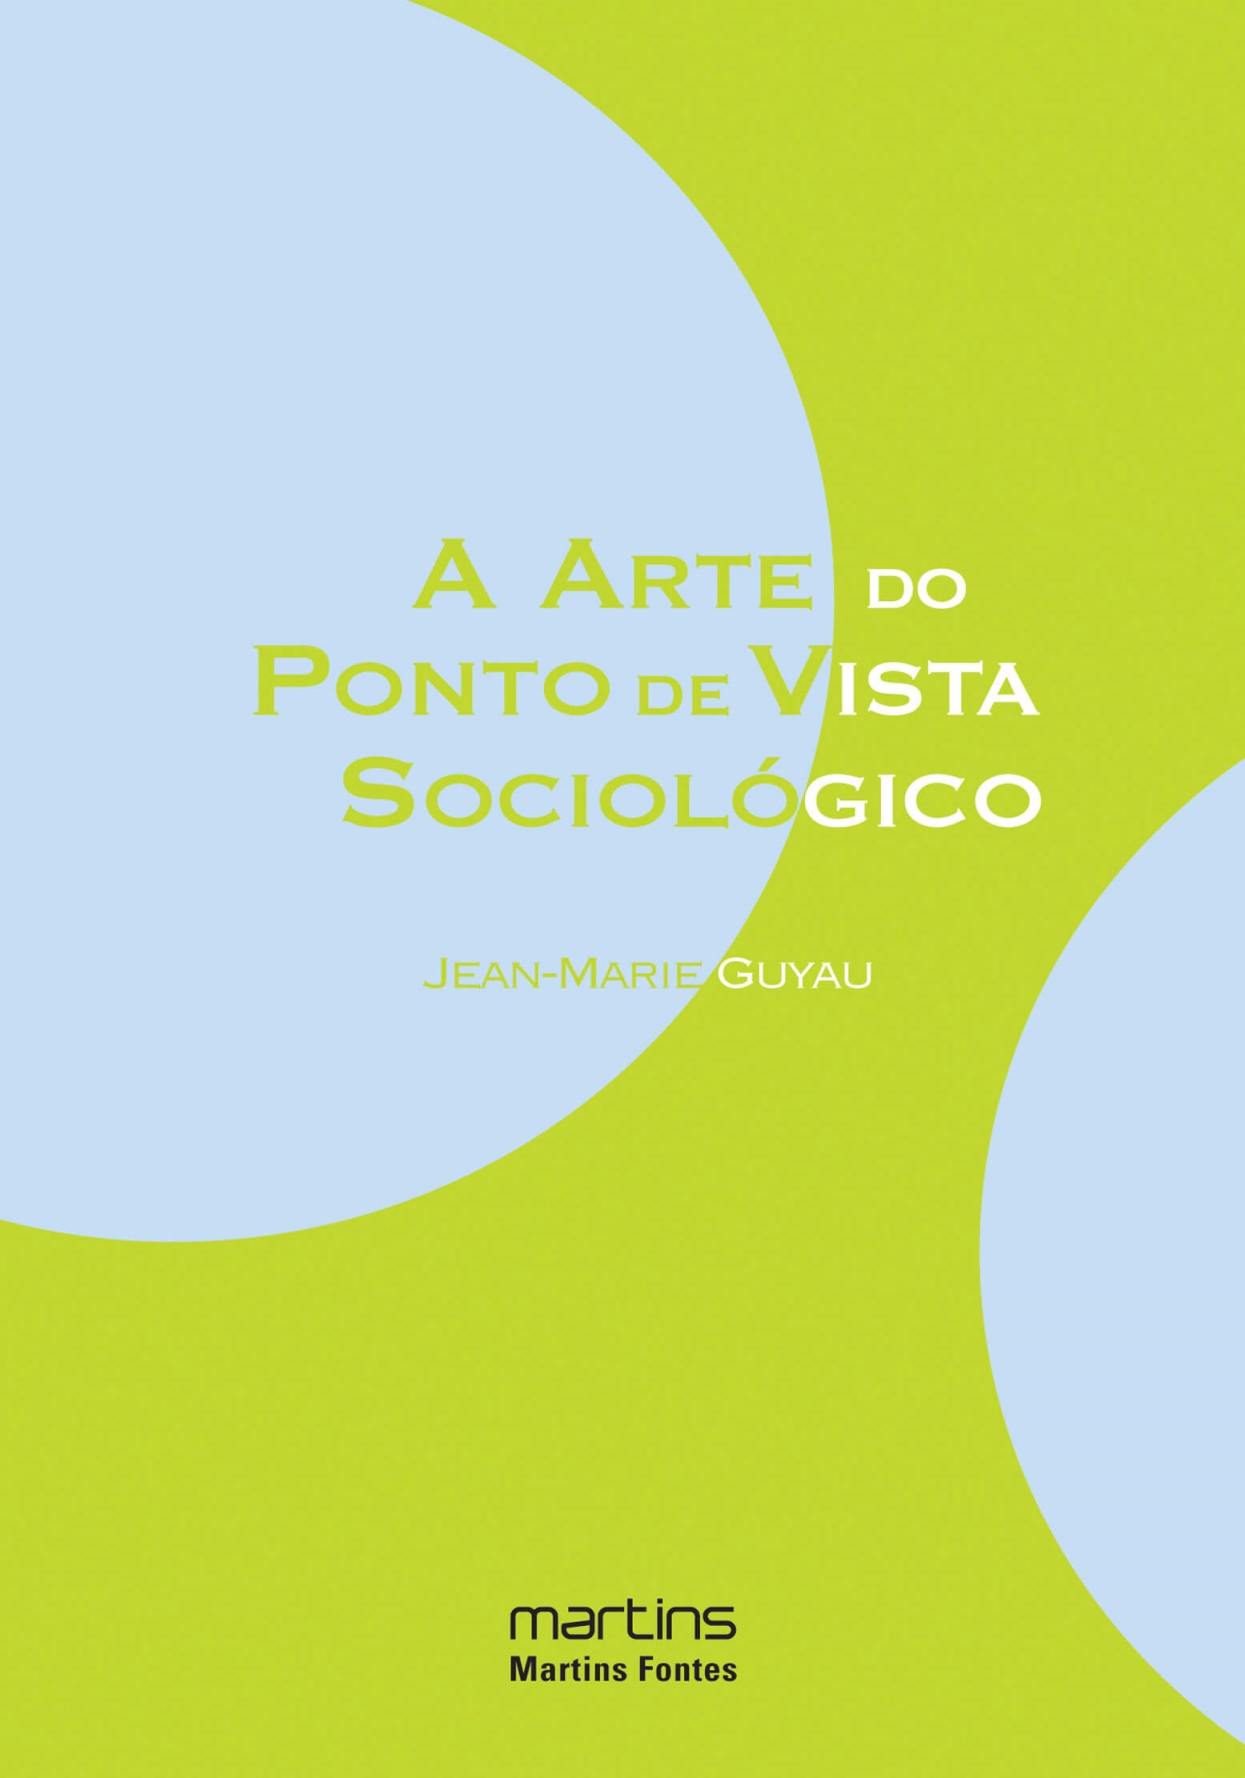 Arte do ponto de vista sociologico, A  - Martins Fontes